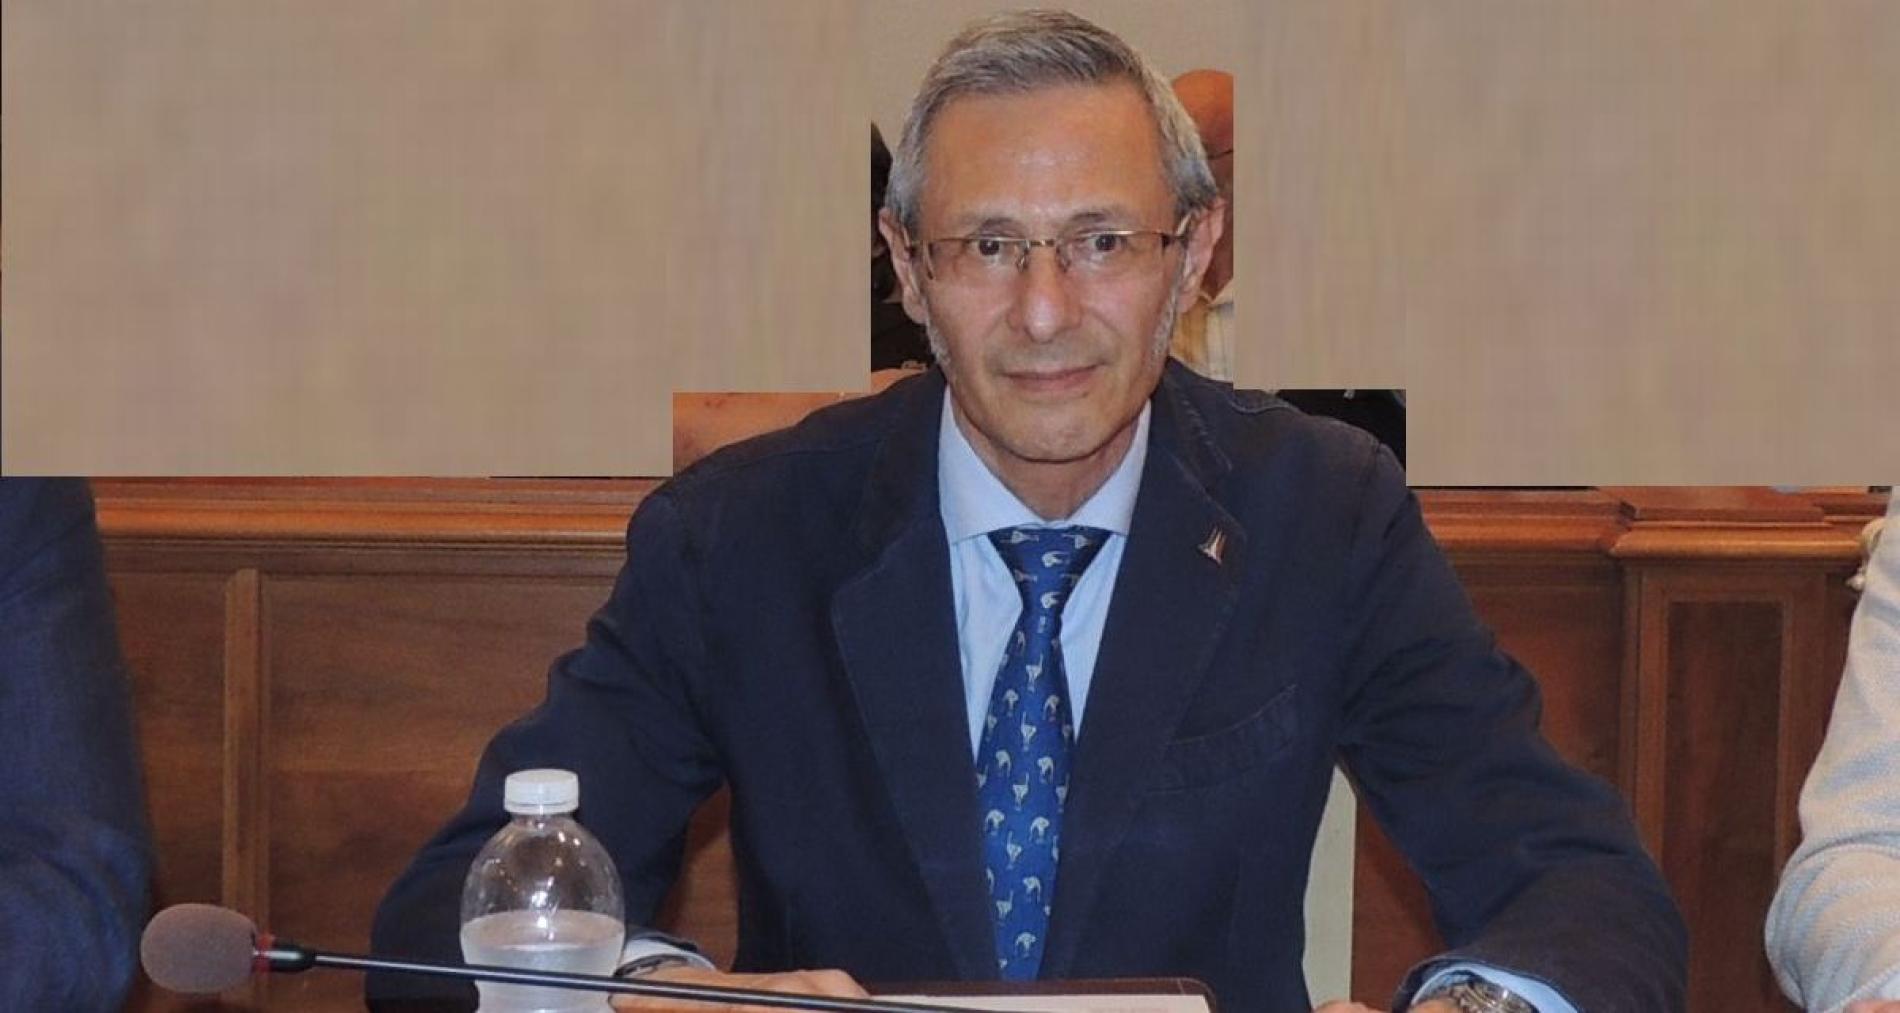 Tortona: il consigliere comunale Fantone passa a Fratelli D’Italia